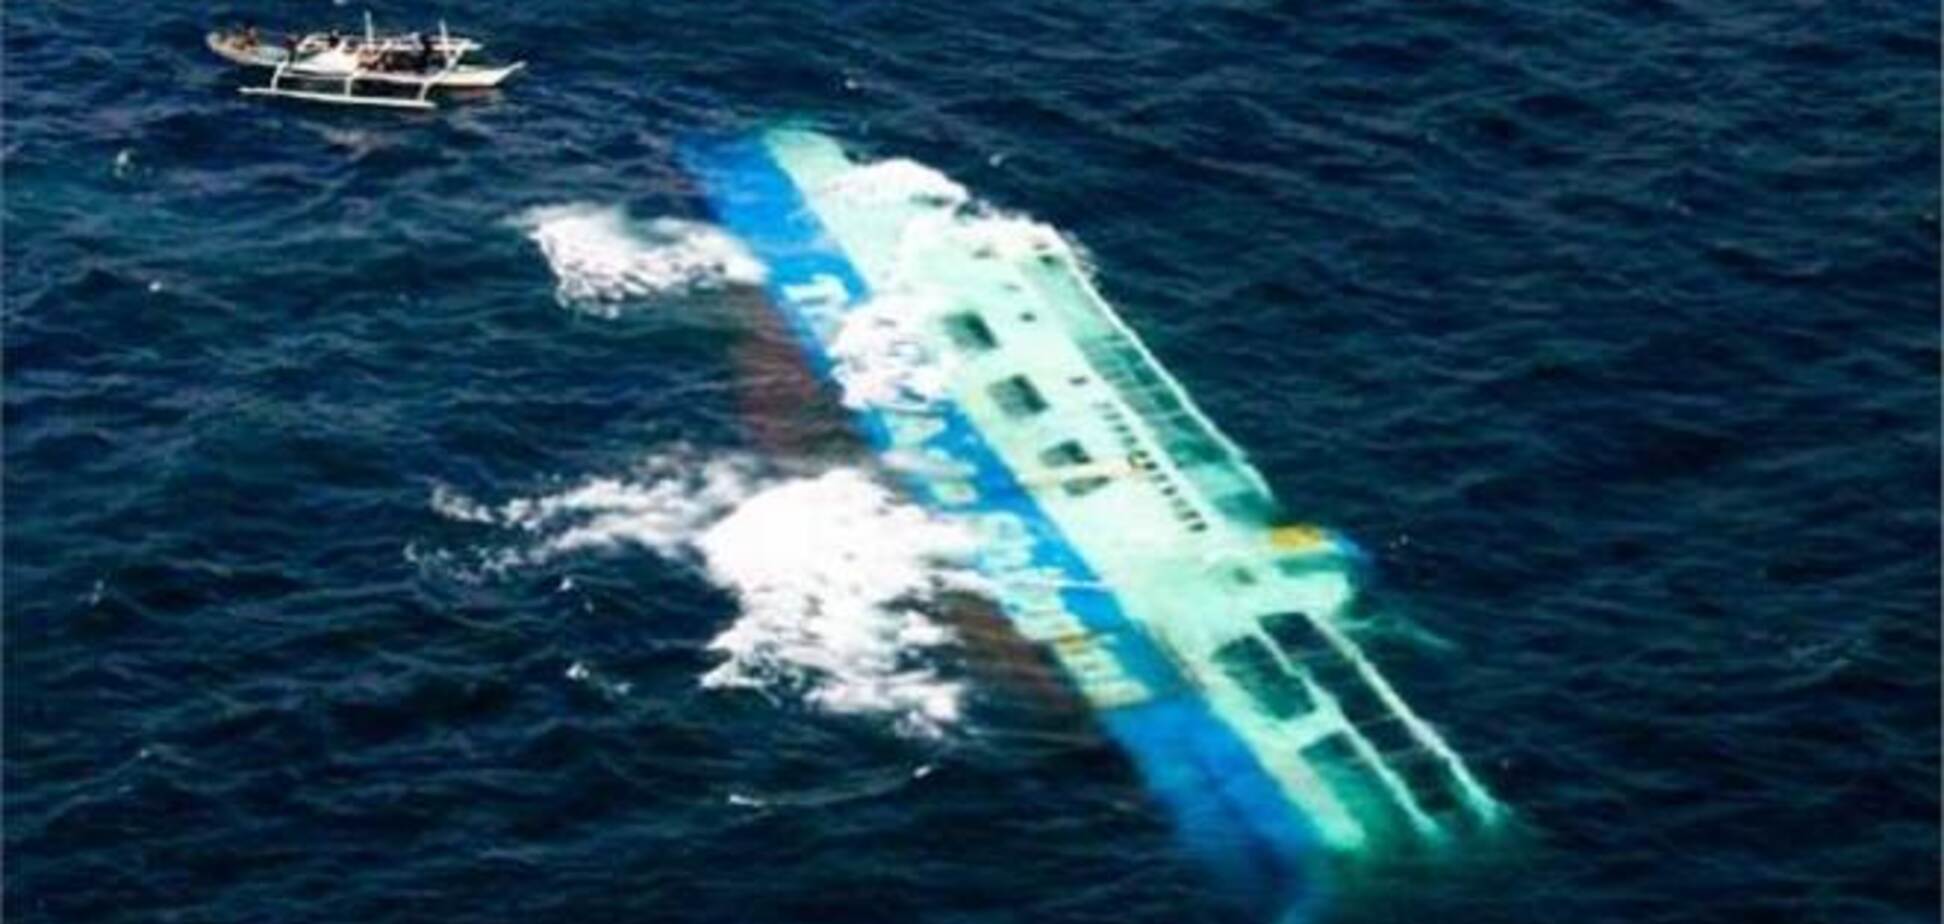 На Філіппінах пором з 700 пасажирами зіткнувся з вантажним судном